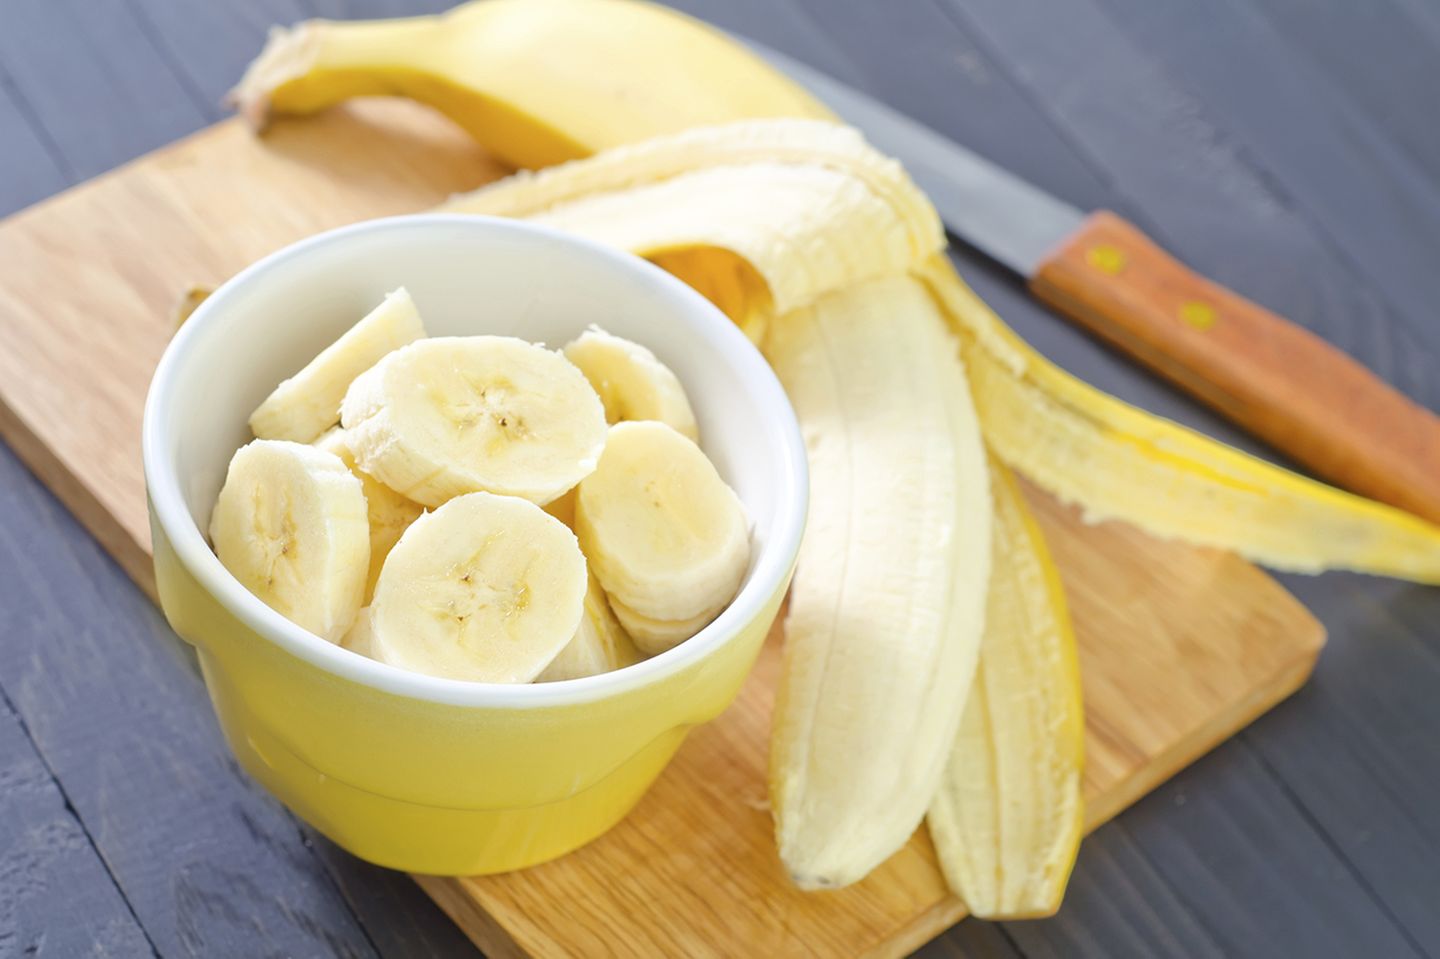 Bananen schmecken Dank ihrer natürlichen Süße fast allen Kindern. Sie sind ein praktischer Snack für zwischendurch und leicht verdaulich. Ist Ihr Baby noch ein Beikost-Anfänger? Rühren Sie ein kleines Bananenmus mit etwas Milchpulver an. So flutscht die Banane leichter in Babys Magen.